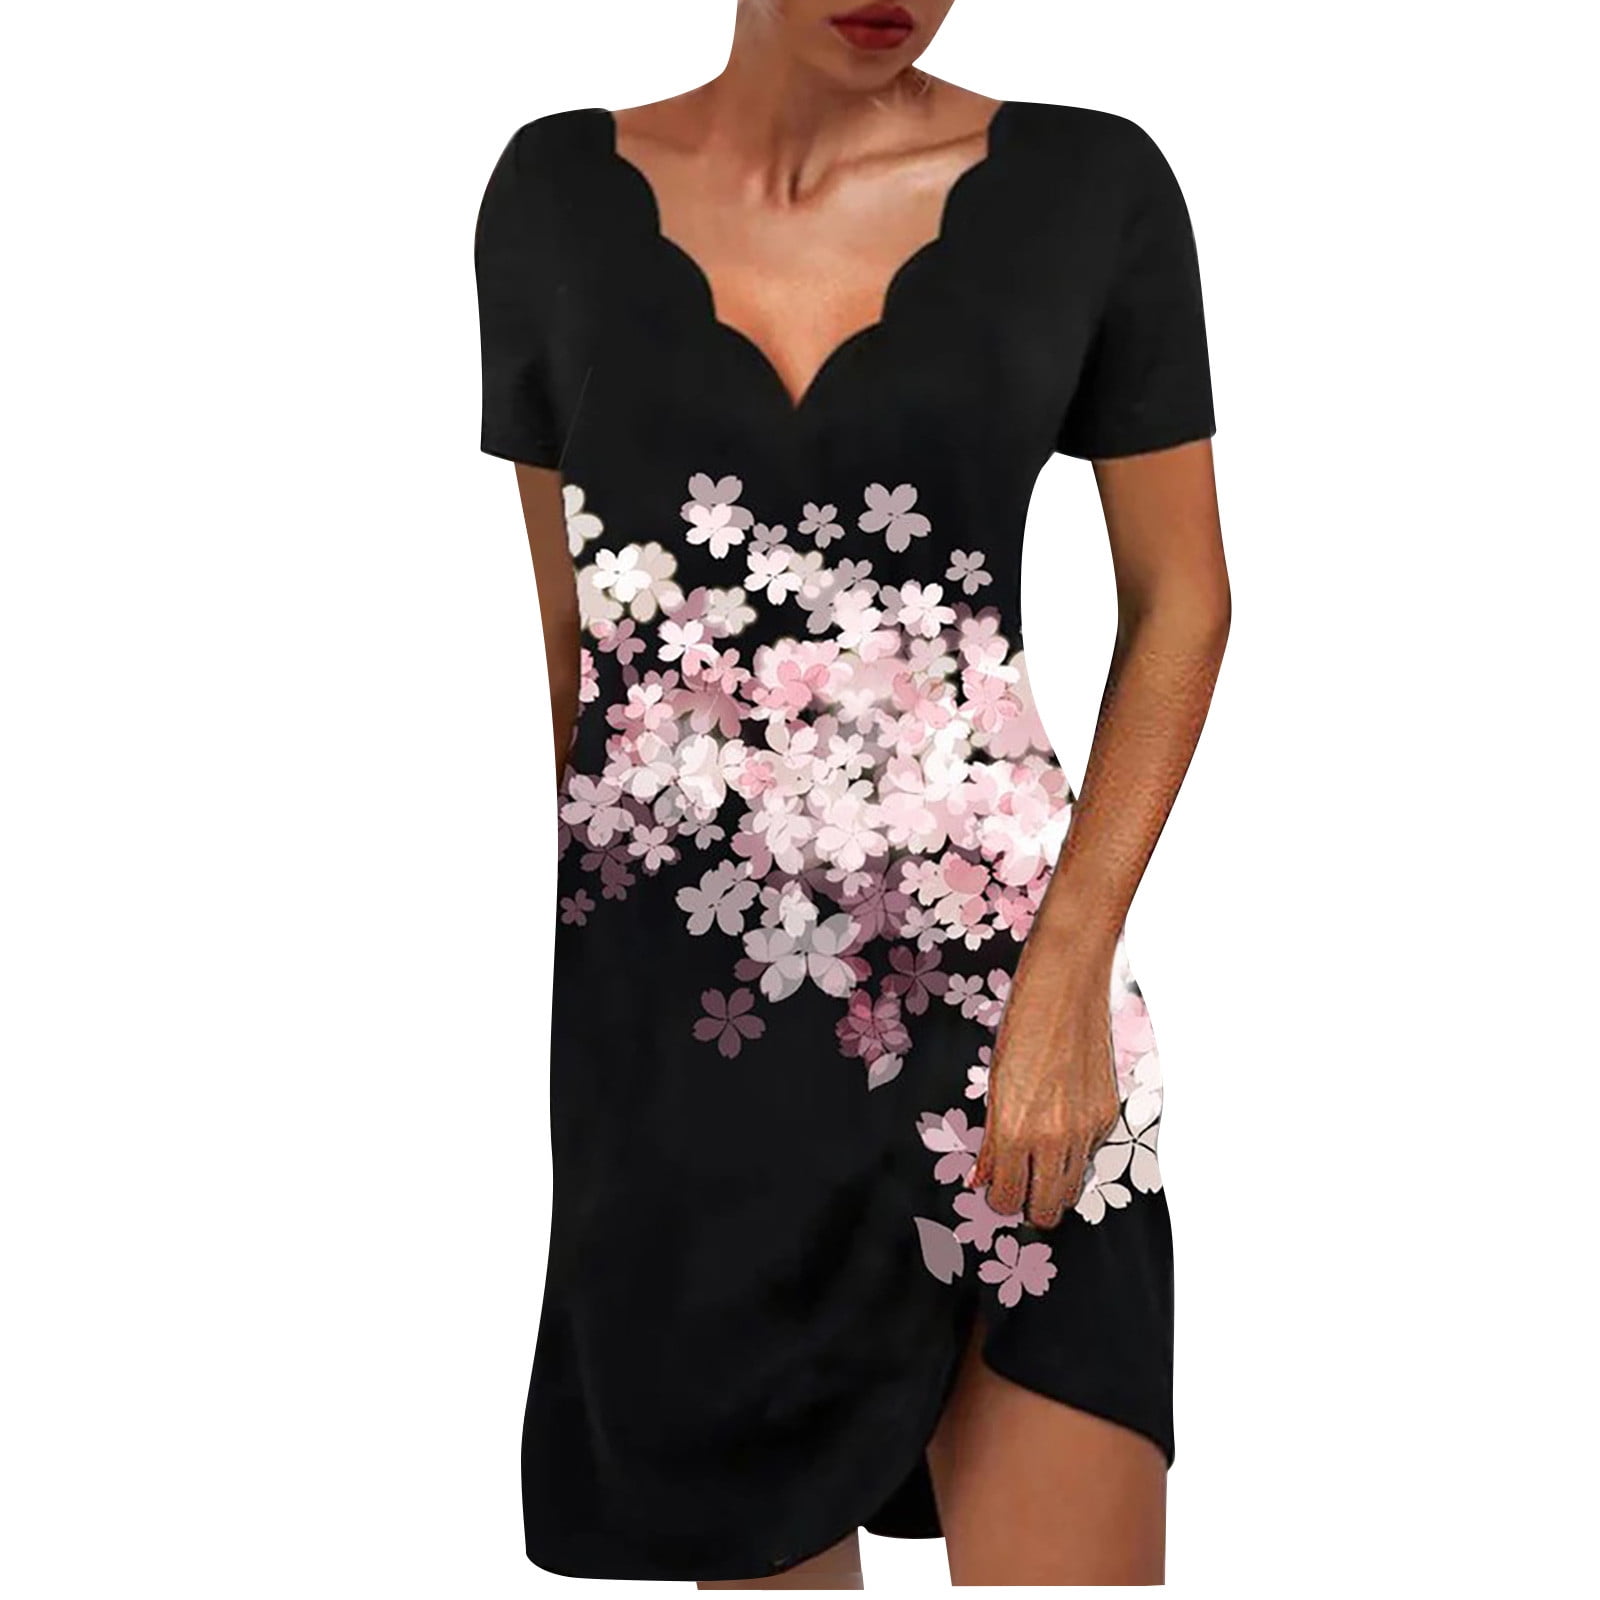 TOTOD Dress for Women Floral Print Sleeveless O-Neck Zipper Minidress Summer Sundress 